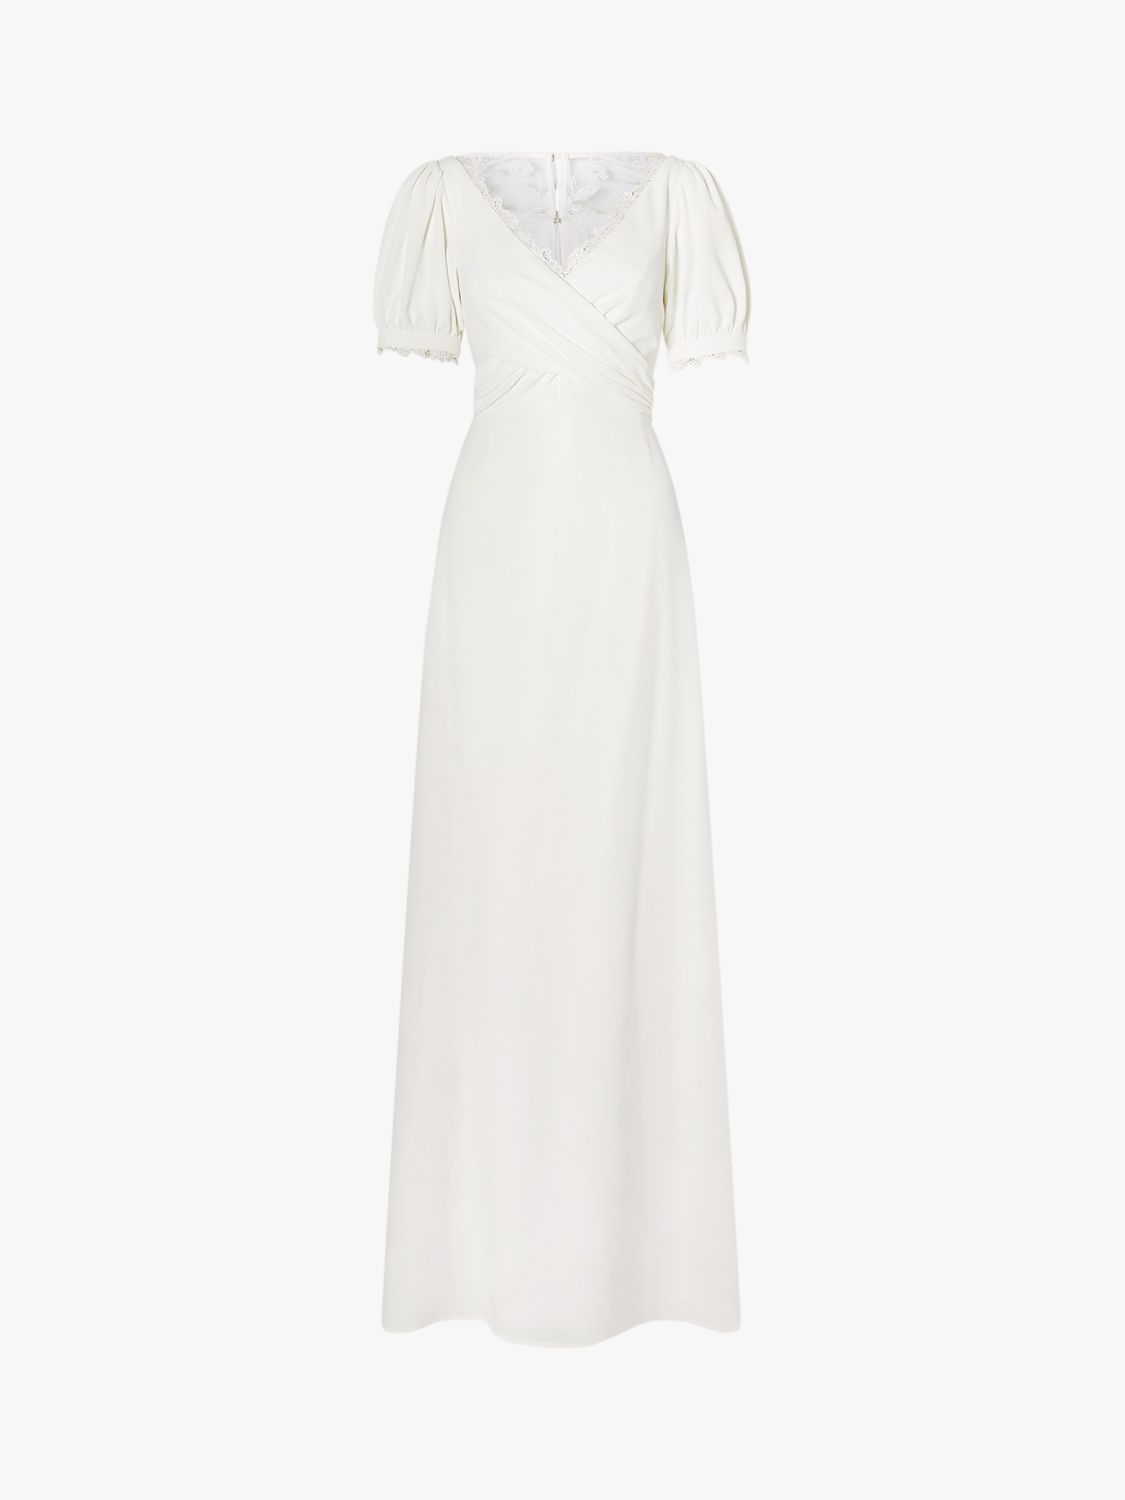 Monsoon Wrap Bodice Maxi Wedding Dress, Ivory at John Lewis & Partners